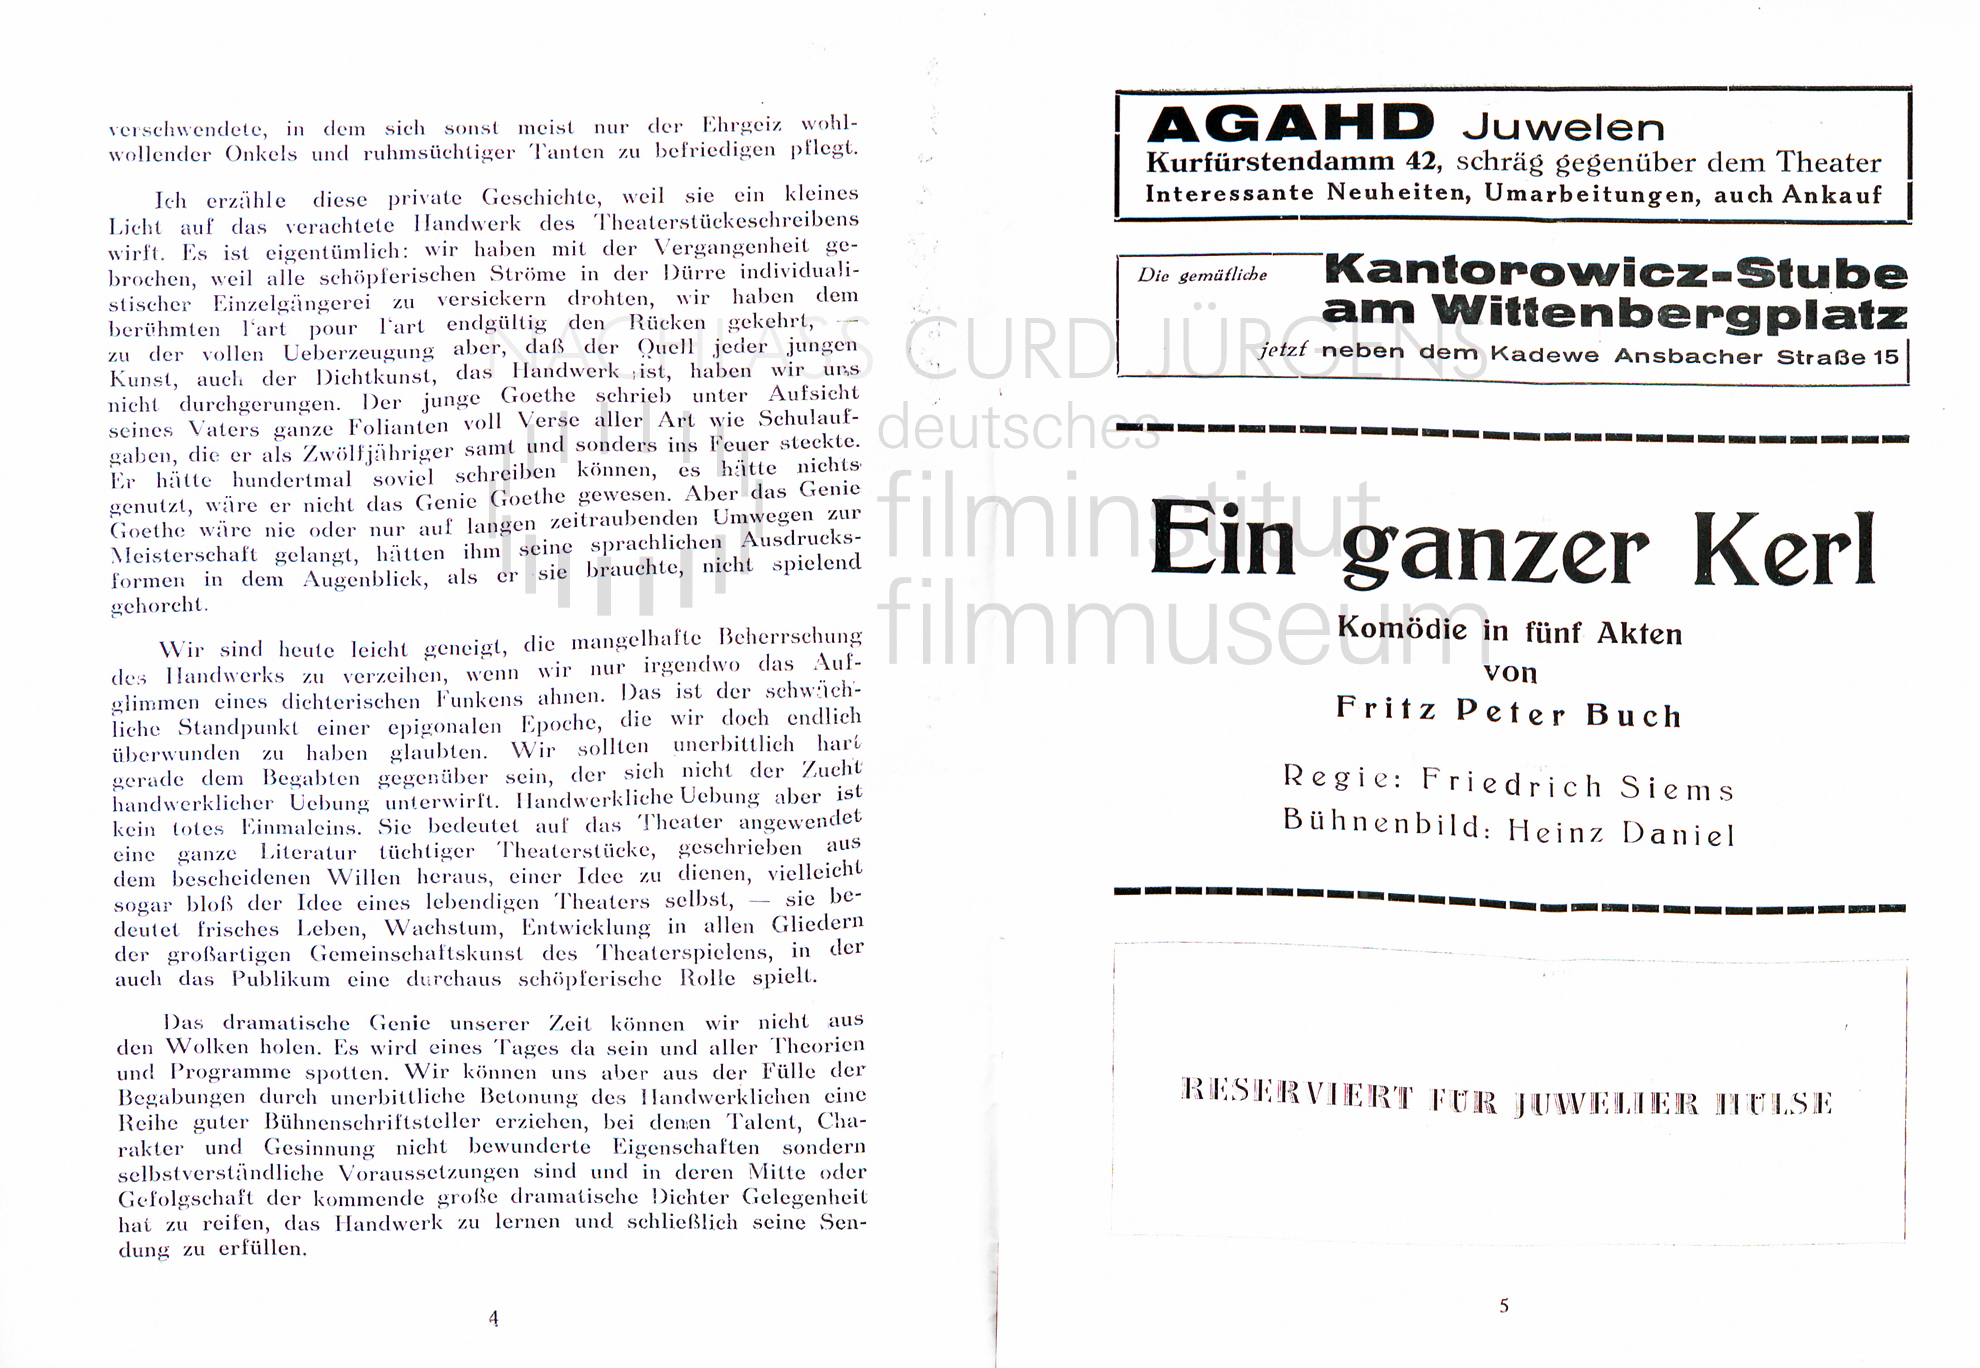 "Ein ganzer Kerl" Programm. Komödie am Kurfürstendamm, 1938